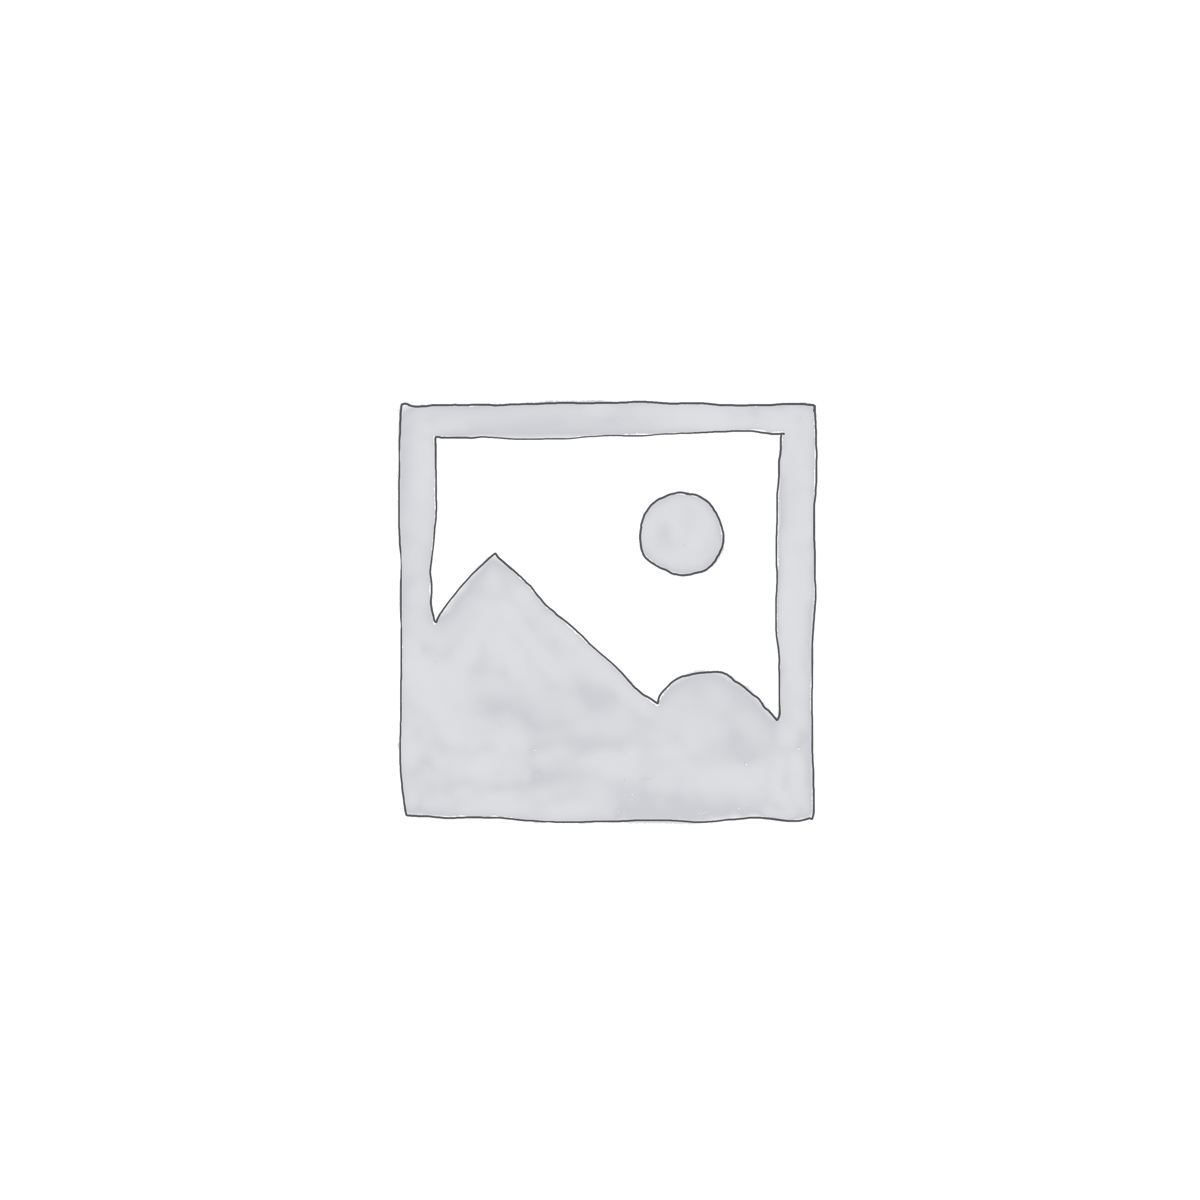 Funktionscouchtisch Ben, Dekor Weiß, 78 x 78 x 34 cm, 360° drehbar  Apollo